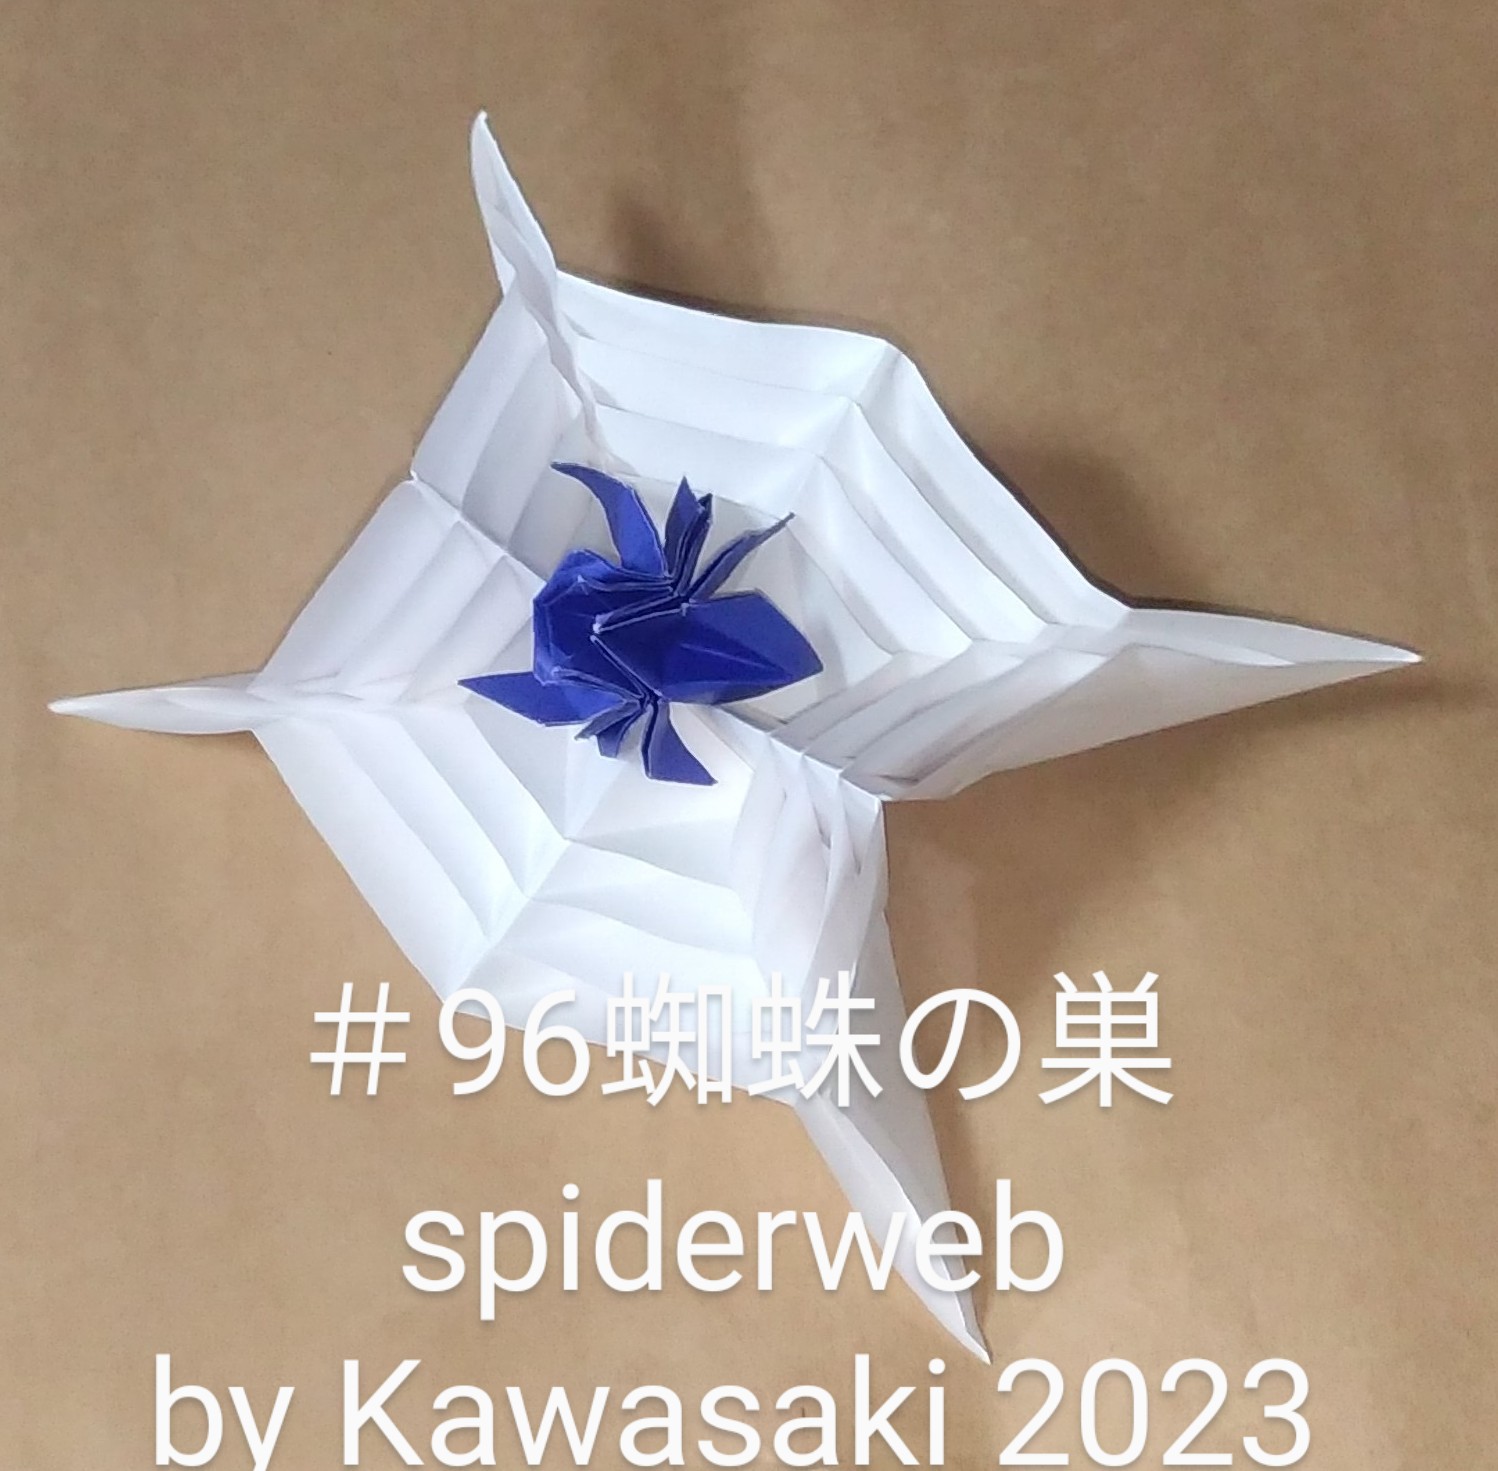 2023/10/16(Mon) 13:35「＃96蜘蛛の巣 spiderweb（2023年10月16日13:13）」川崎敏和 T.Kawasaki
（創作者 Author：川崎敏和 T.Kawasaki,　製作者 Folder：川崎敏和 T.Kawasaki ,　出典 Source：2023年川崎敏和折り紙キット＃96）
 ニルバさんのひまわりのように折りたたんだものが広がってあれよあれよいう間に、手のひらサイズの蜘蛛の巣になります。白7.5cmから2.5cm刻みの4枚組がスムーズに組めるようになりました。